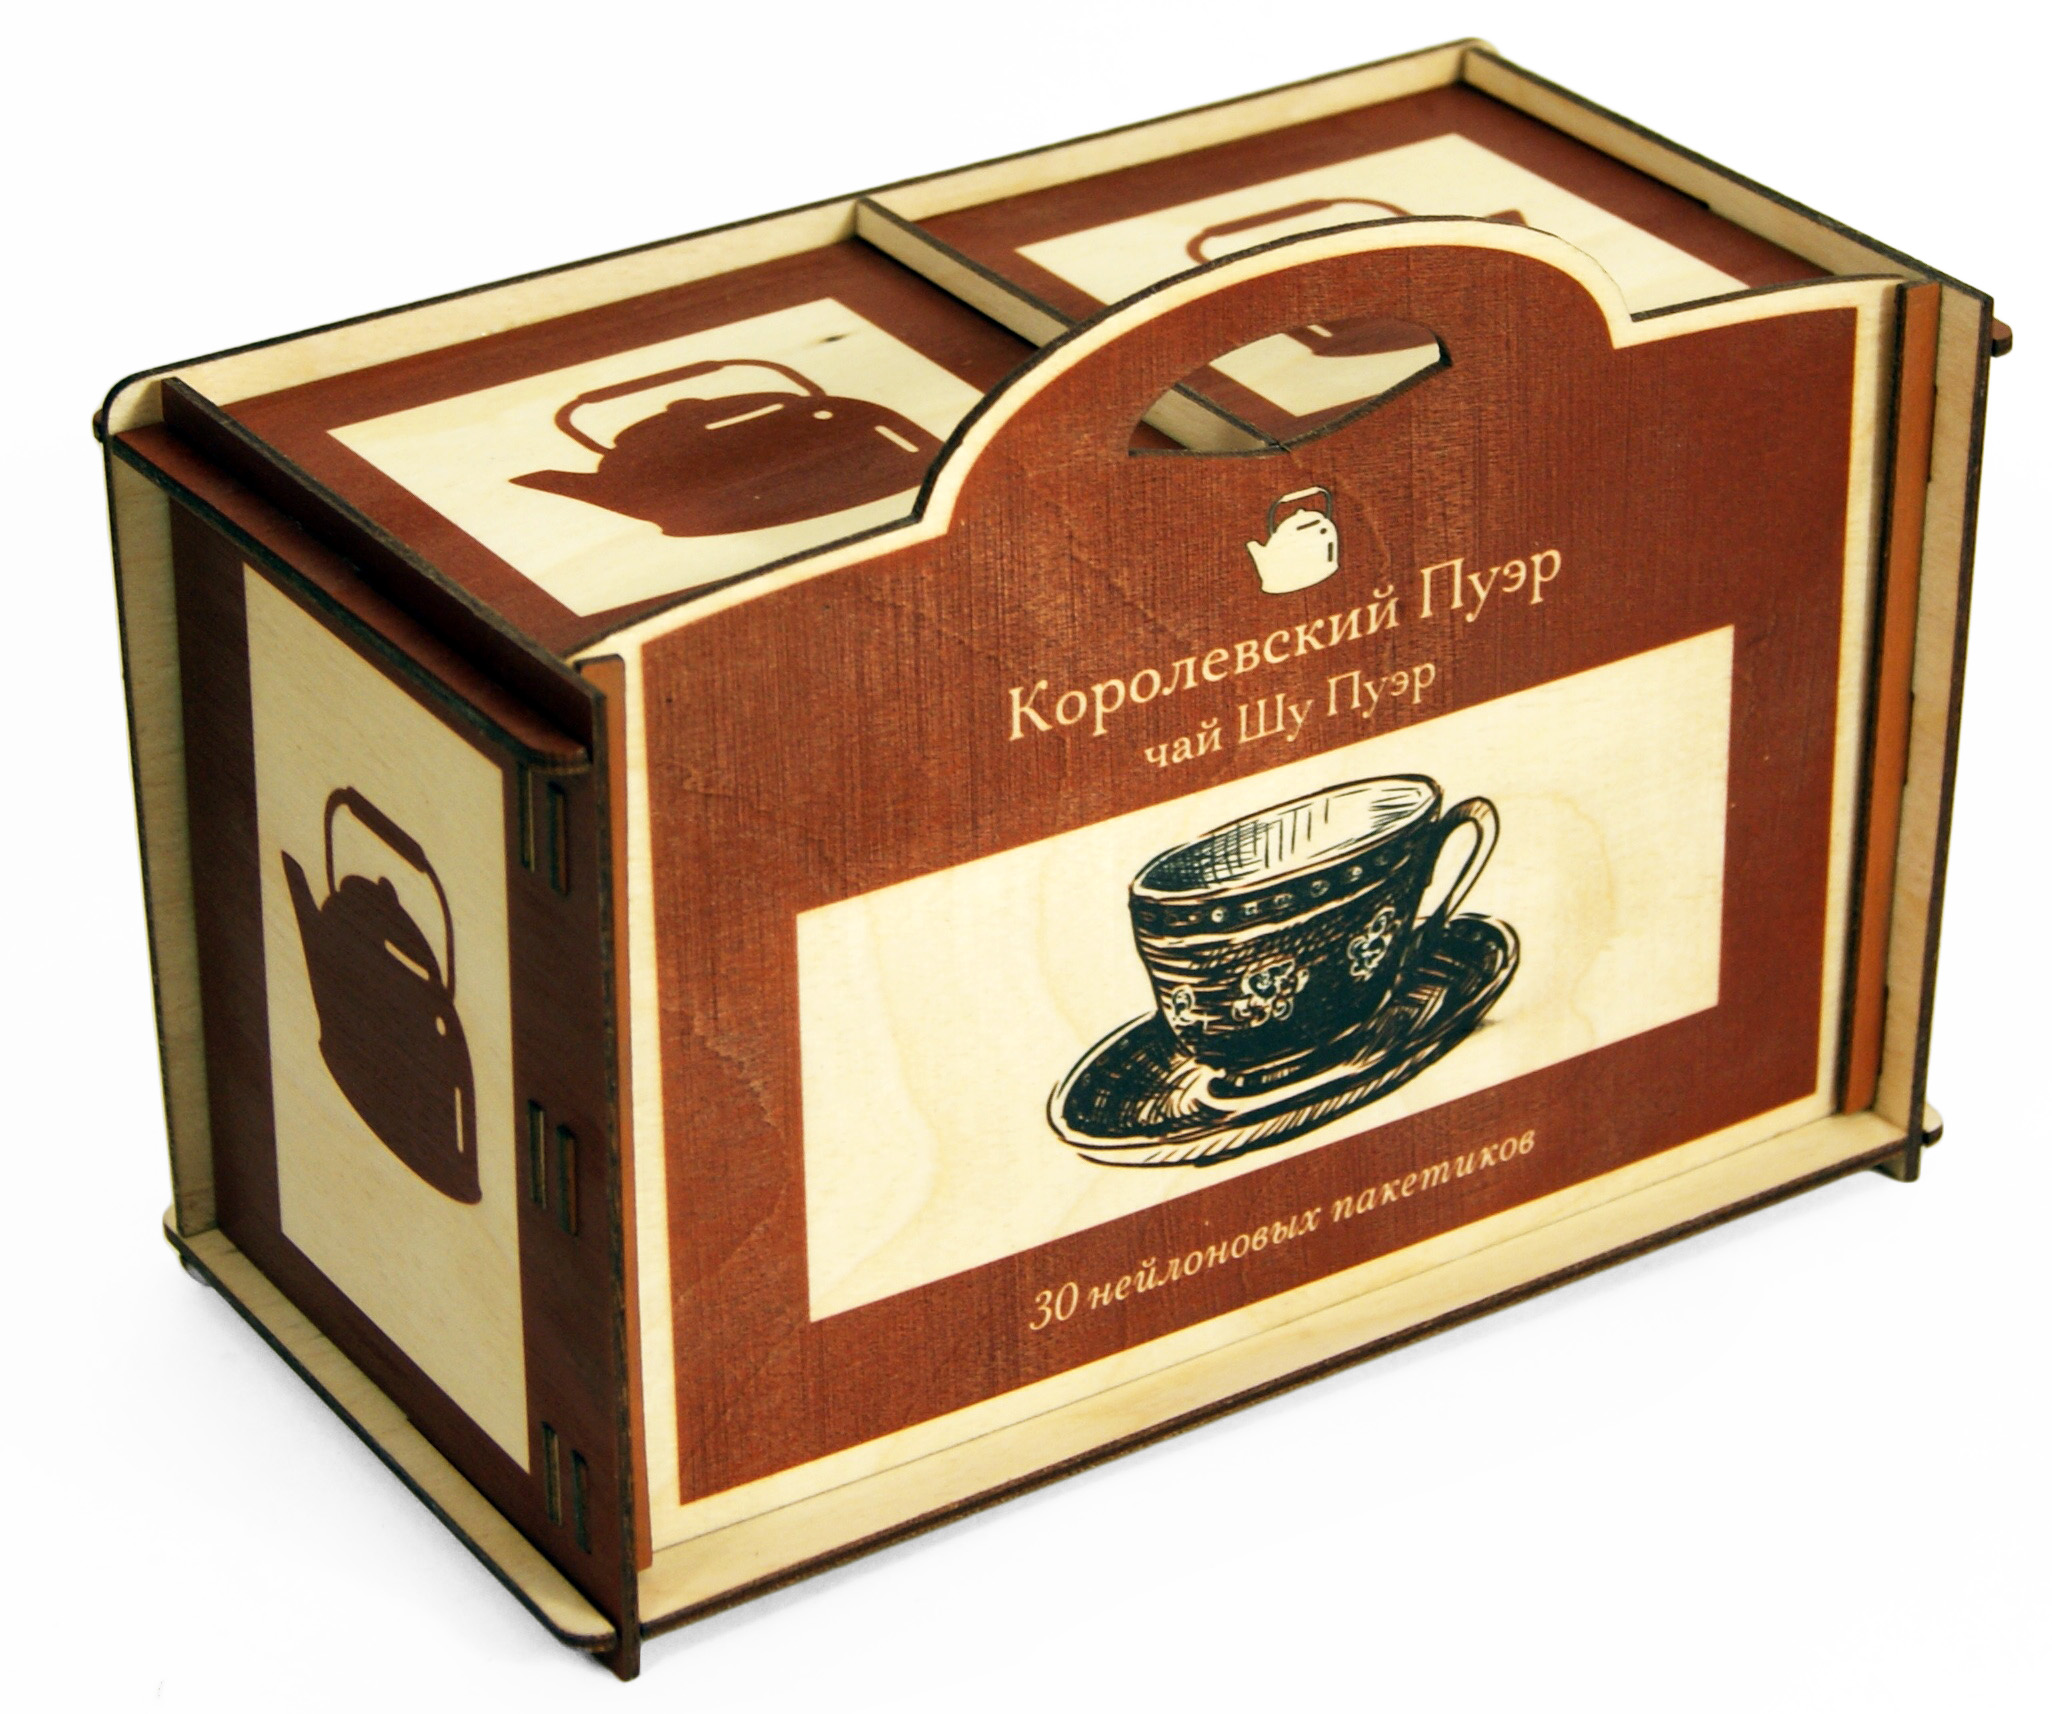 Подарочные наборы чая в коробочках из фанеры, массива и лозы